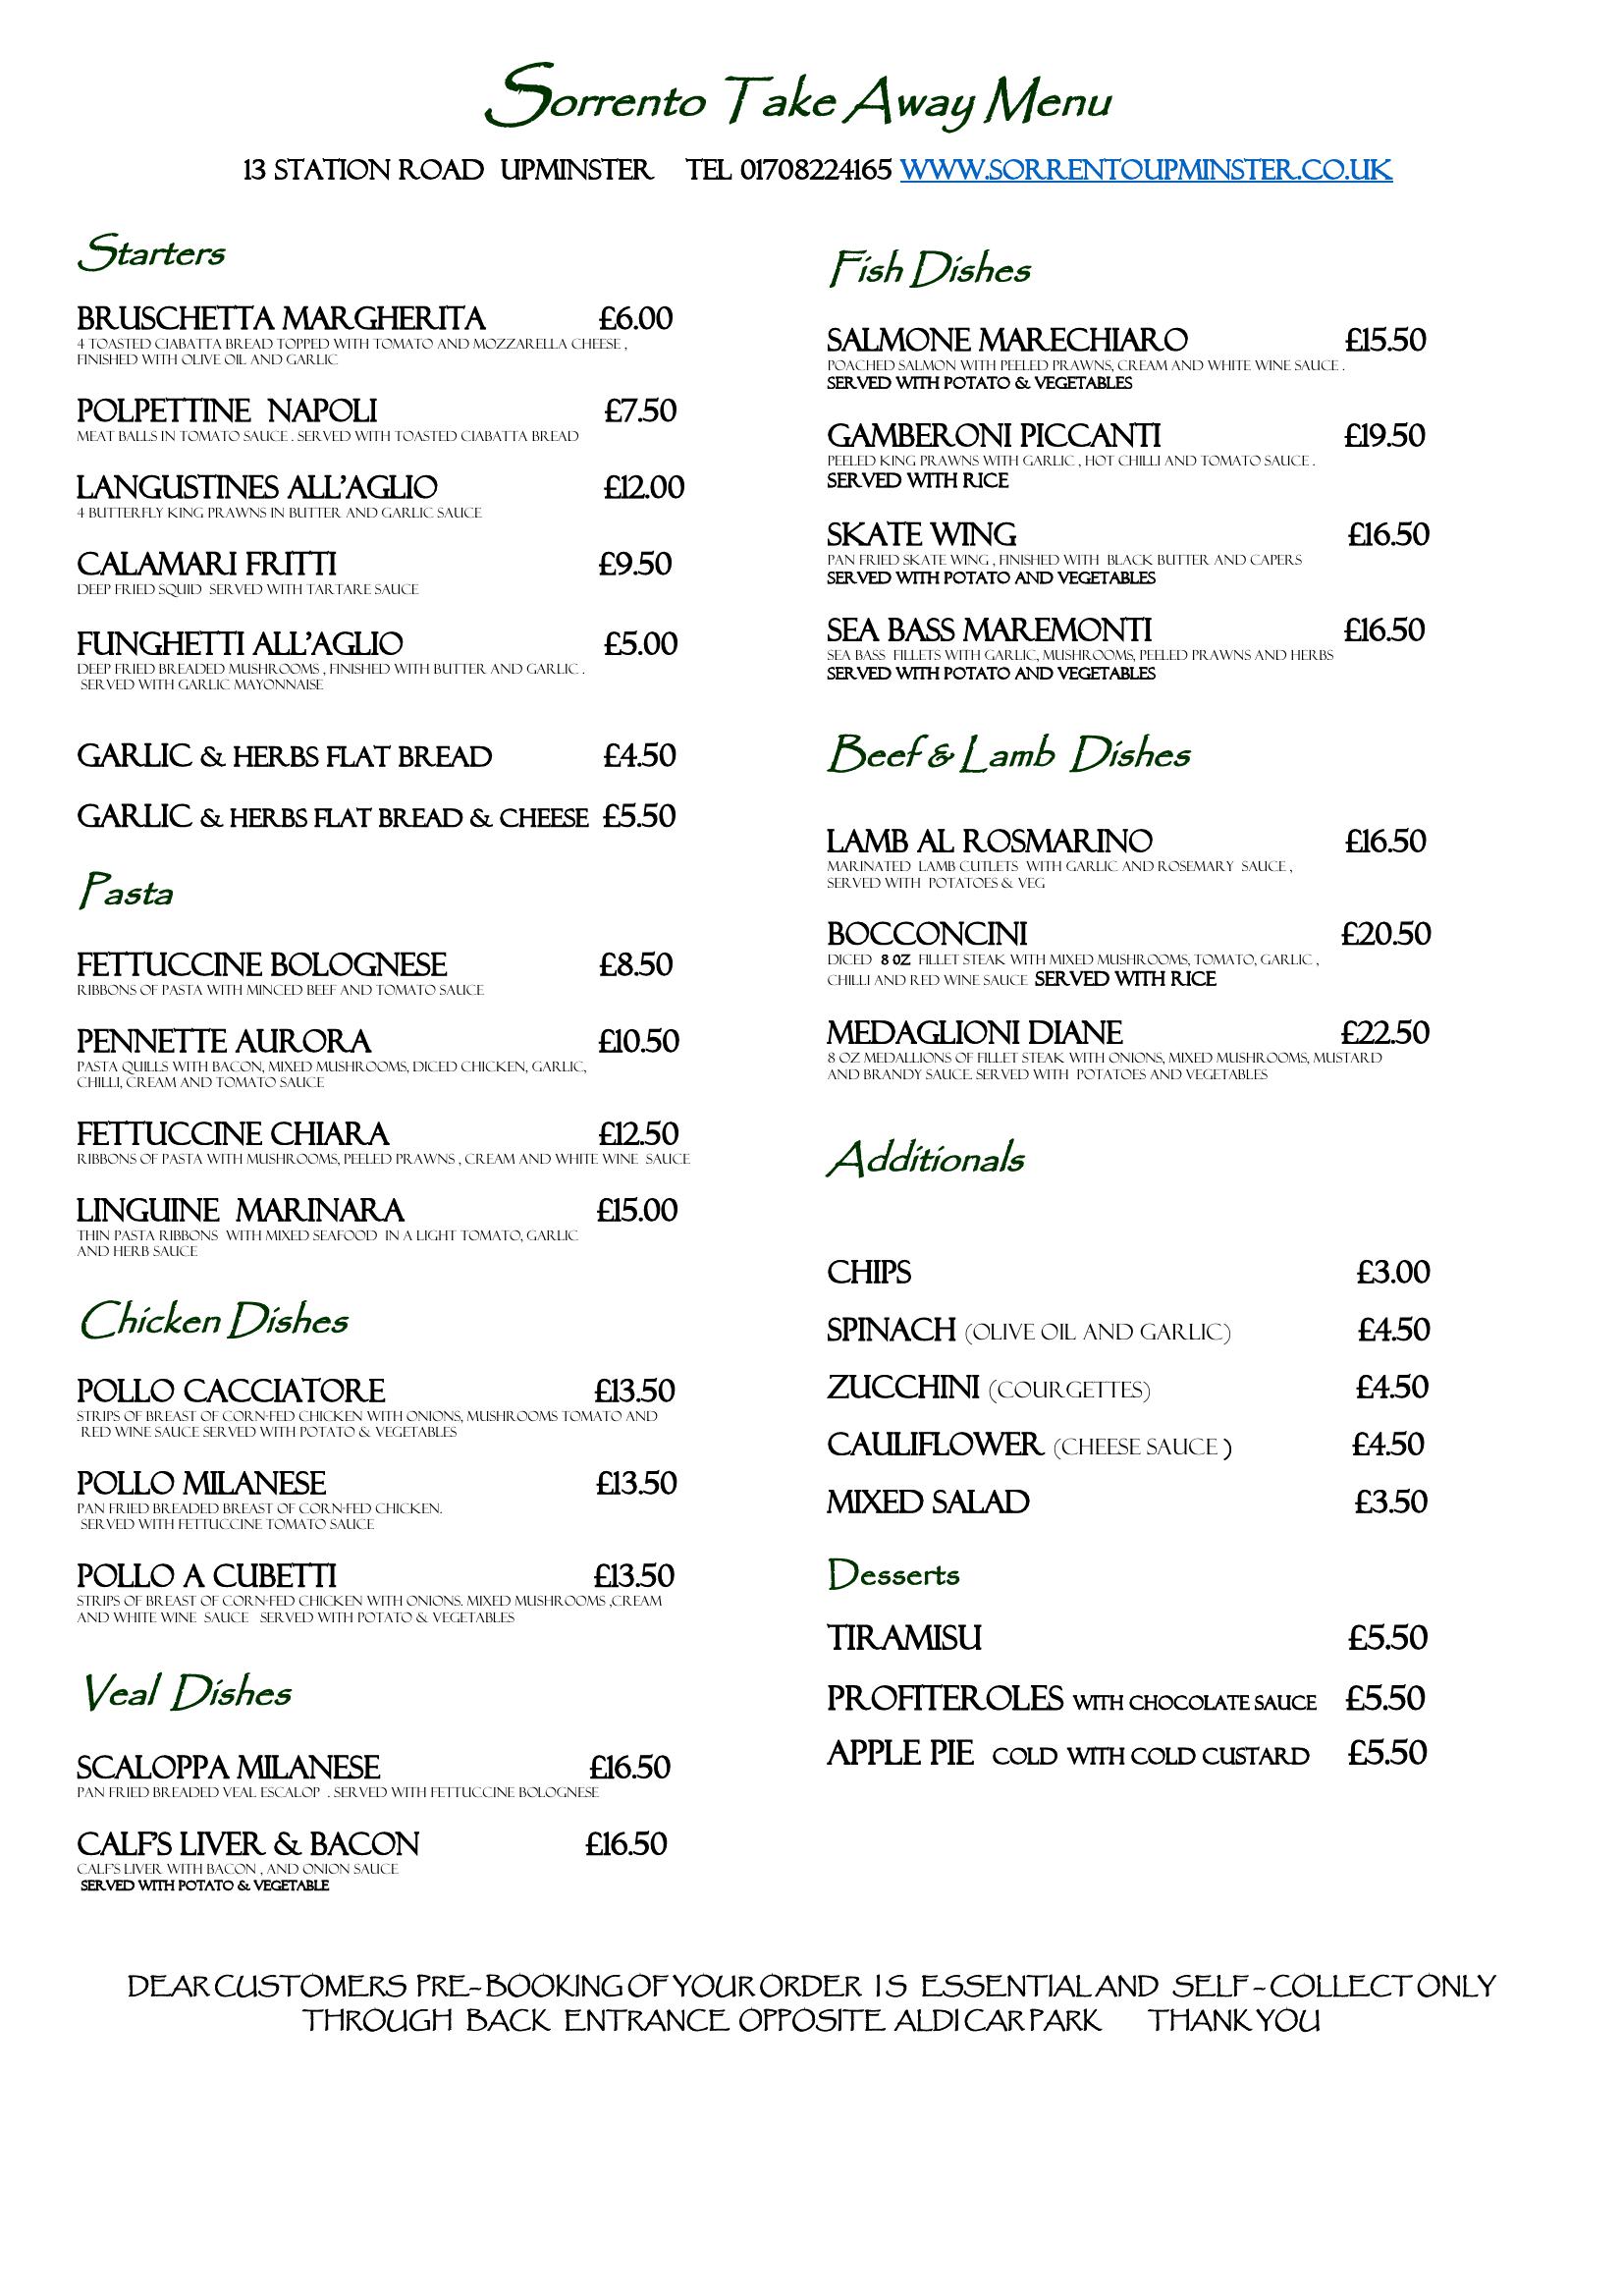 Sorrento Italian Restaurant - main menu